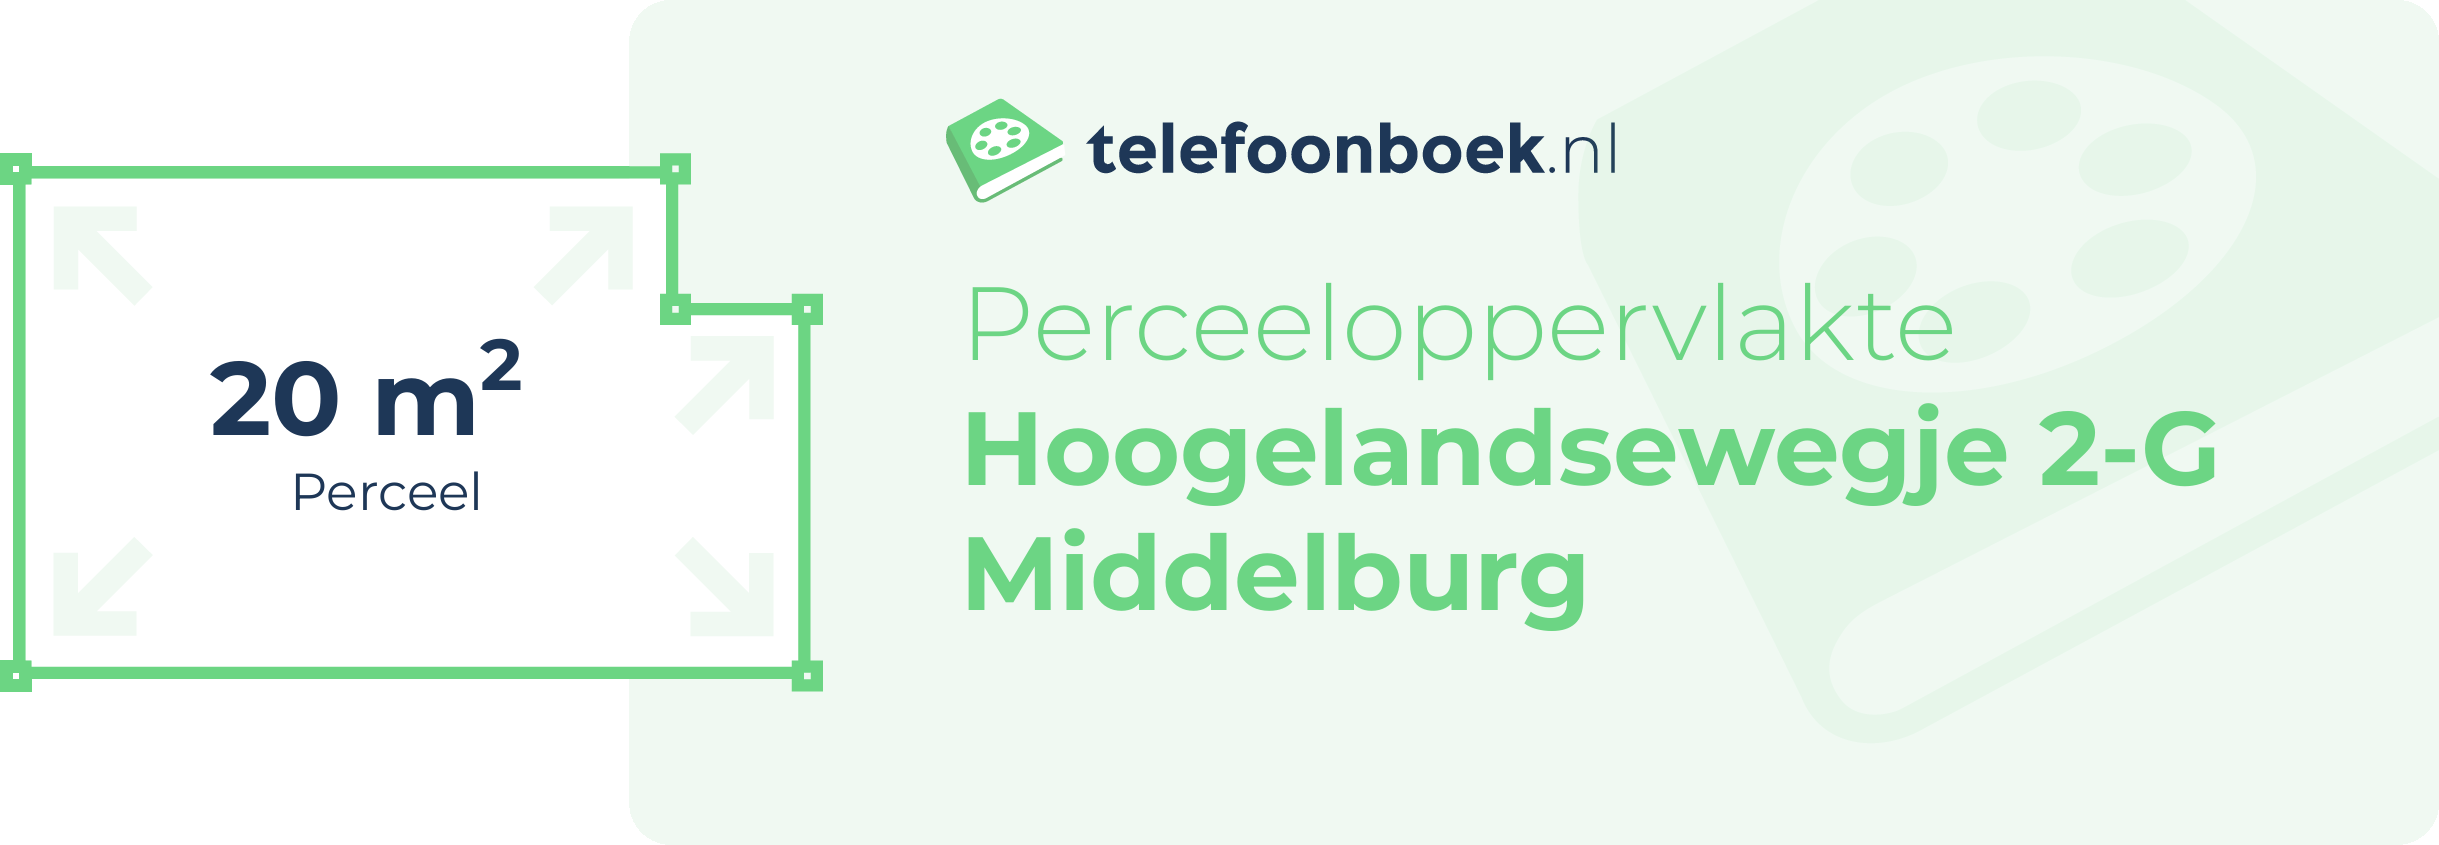 Perceeloppervlakte Hoogelandsewegje 2-G Middelburg